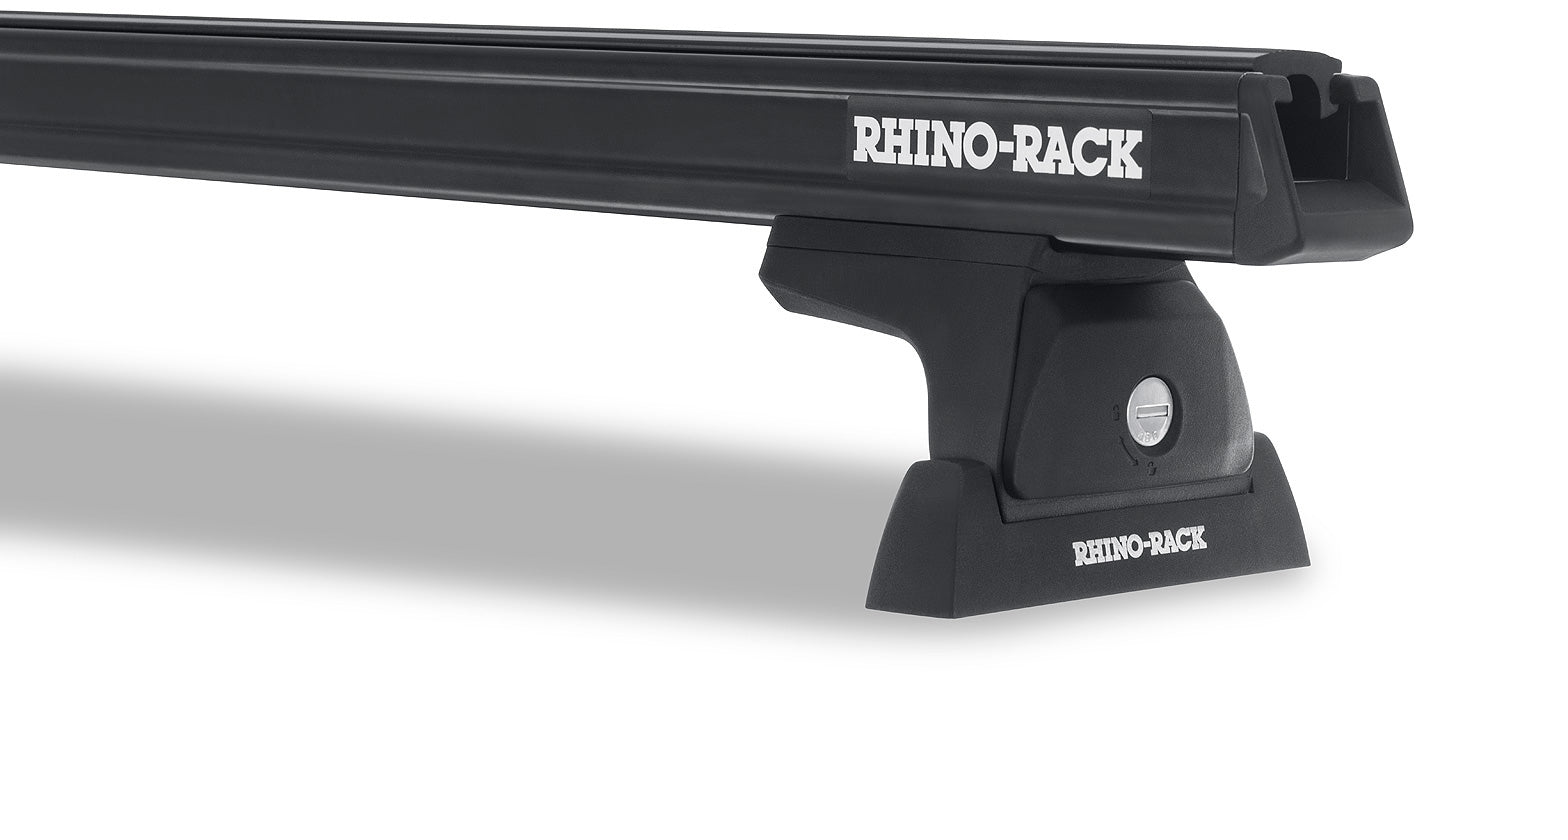 Kit portaequipajes de alta resistencia Rhinorack para Iveco Daily 2014+.